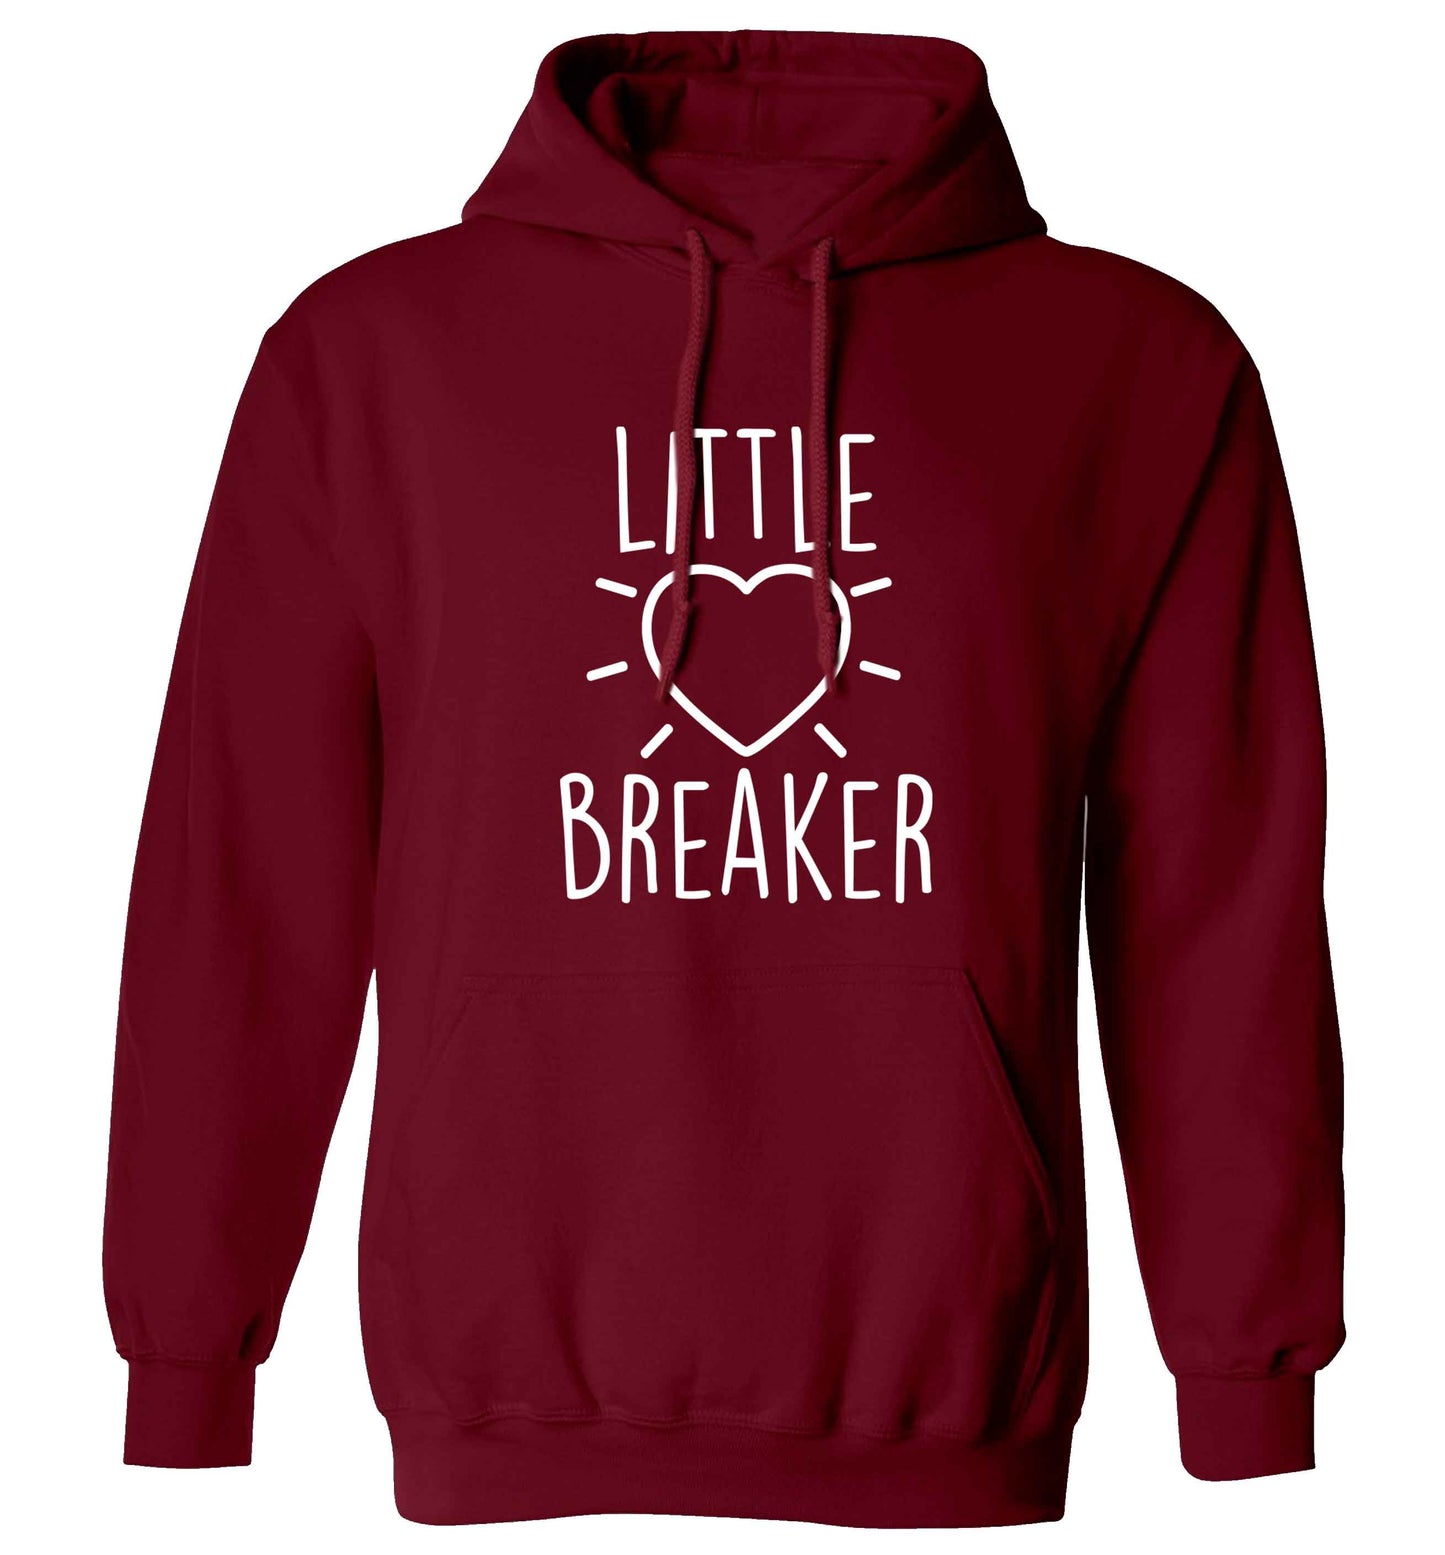 Little heartbreaker adults unisex maroon hoodie 2XL